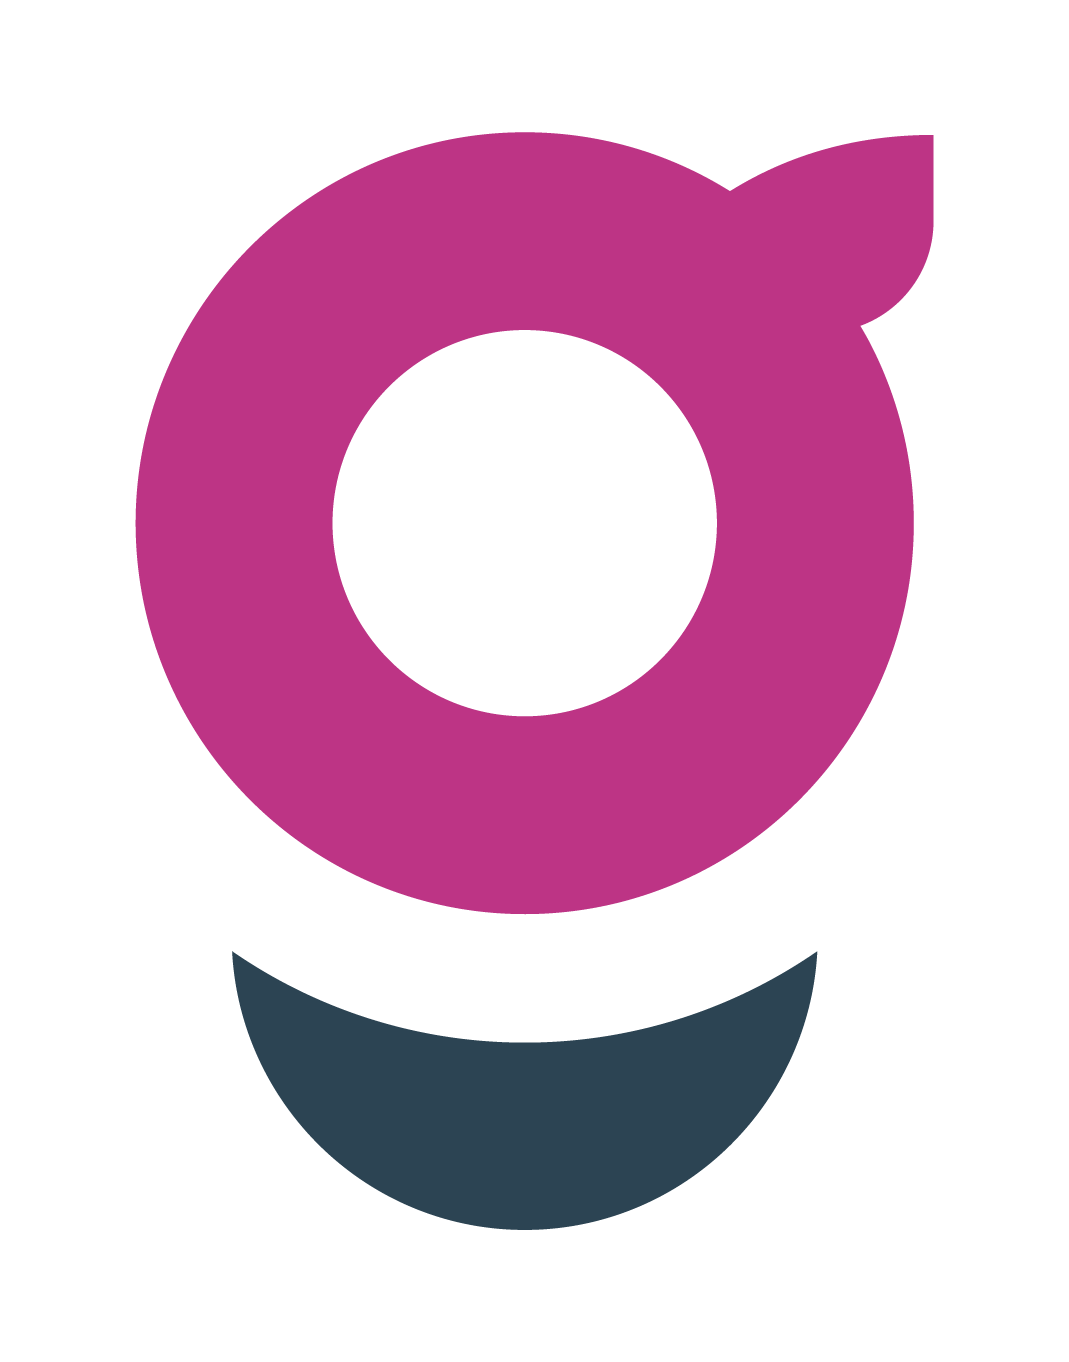 Guroo_Logo_Minion_Positive_MAGENTA